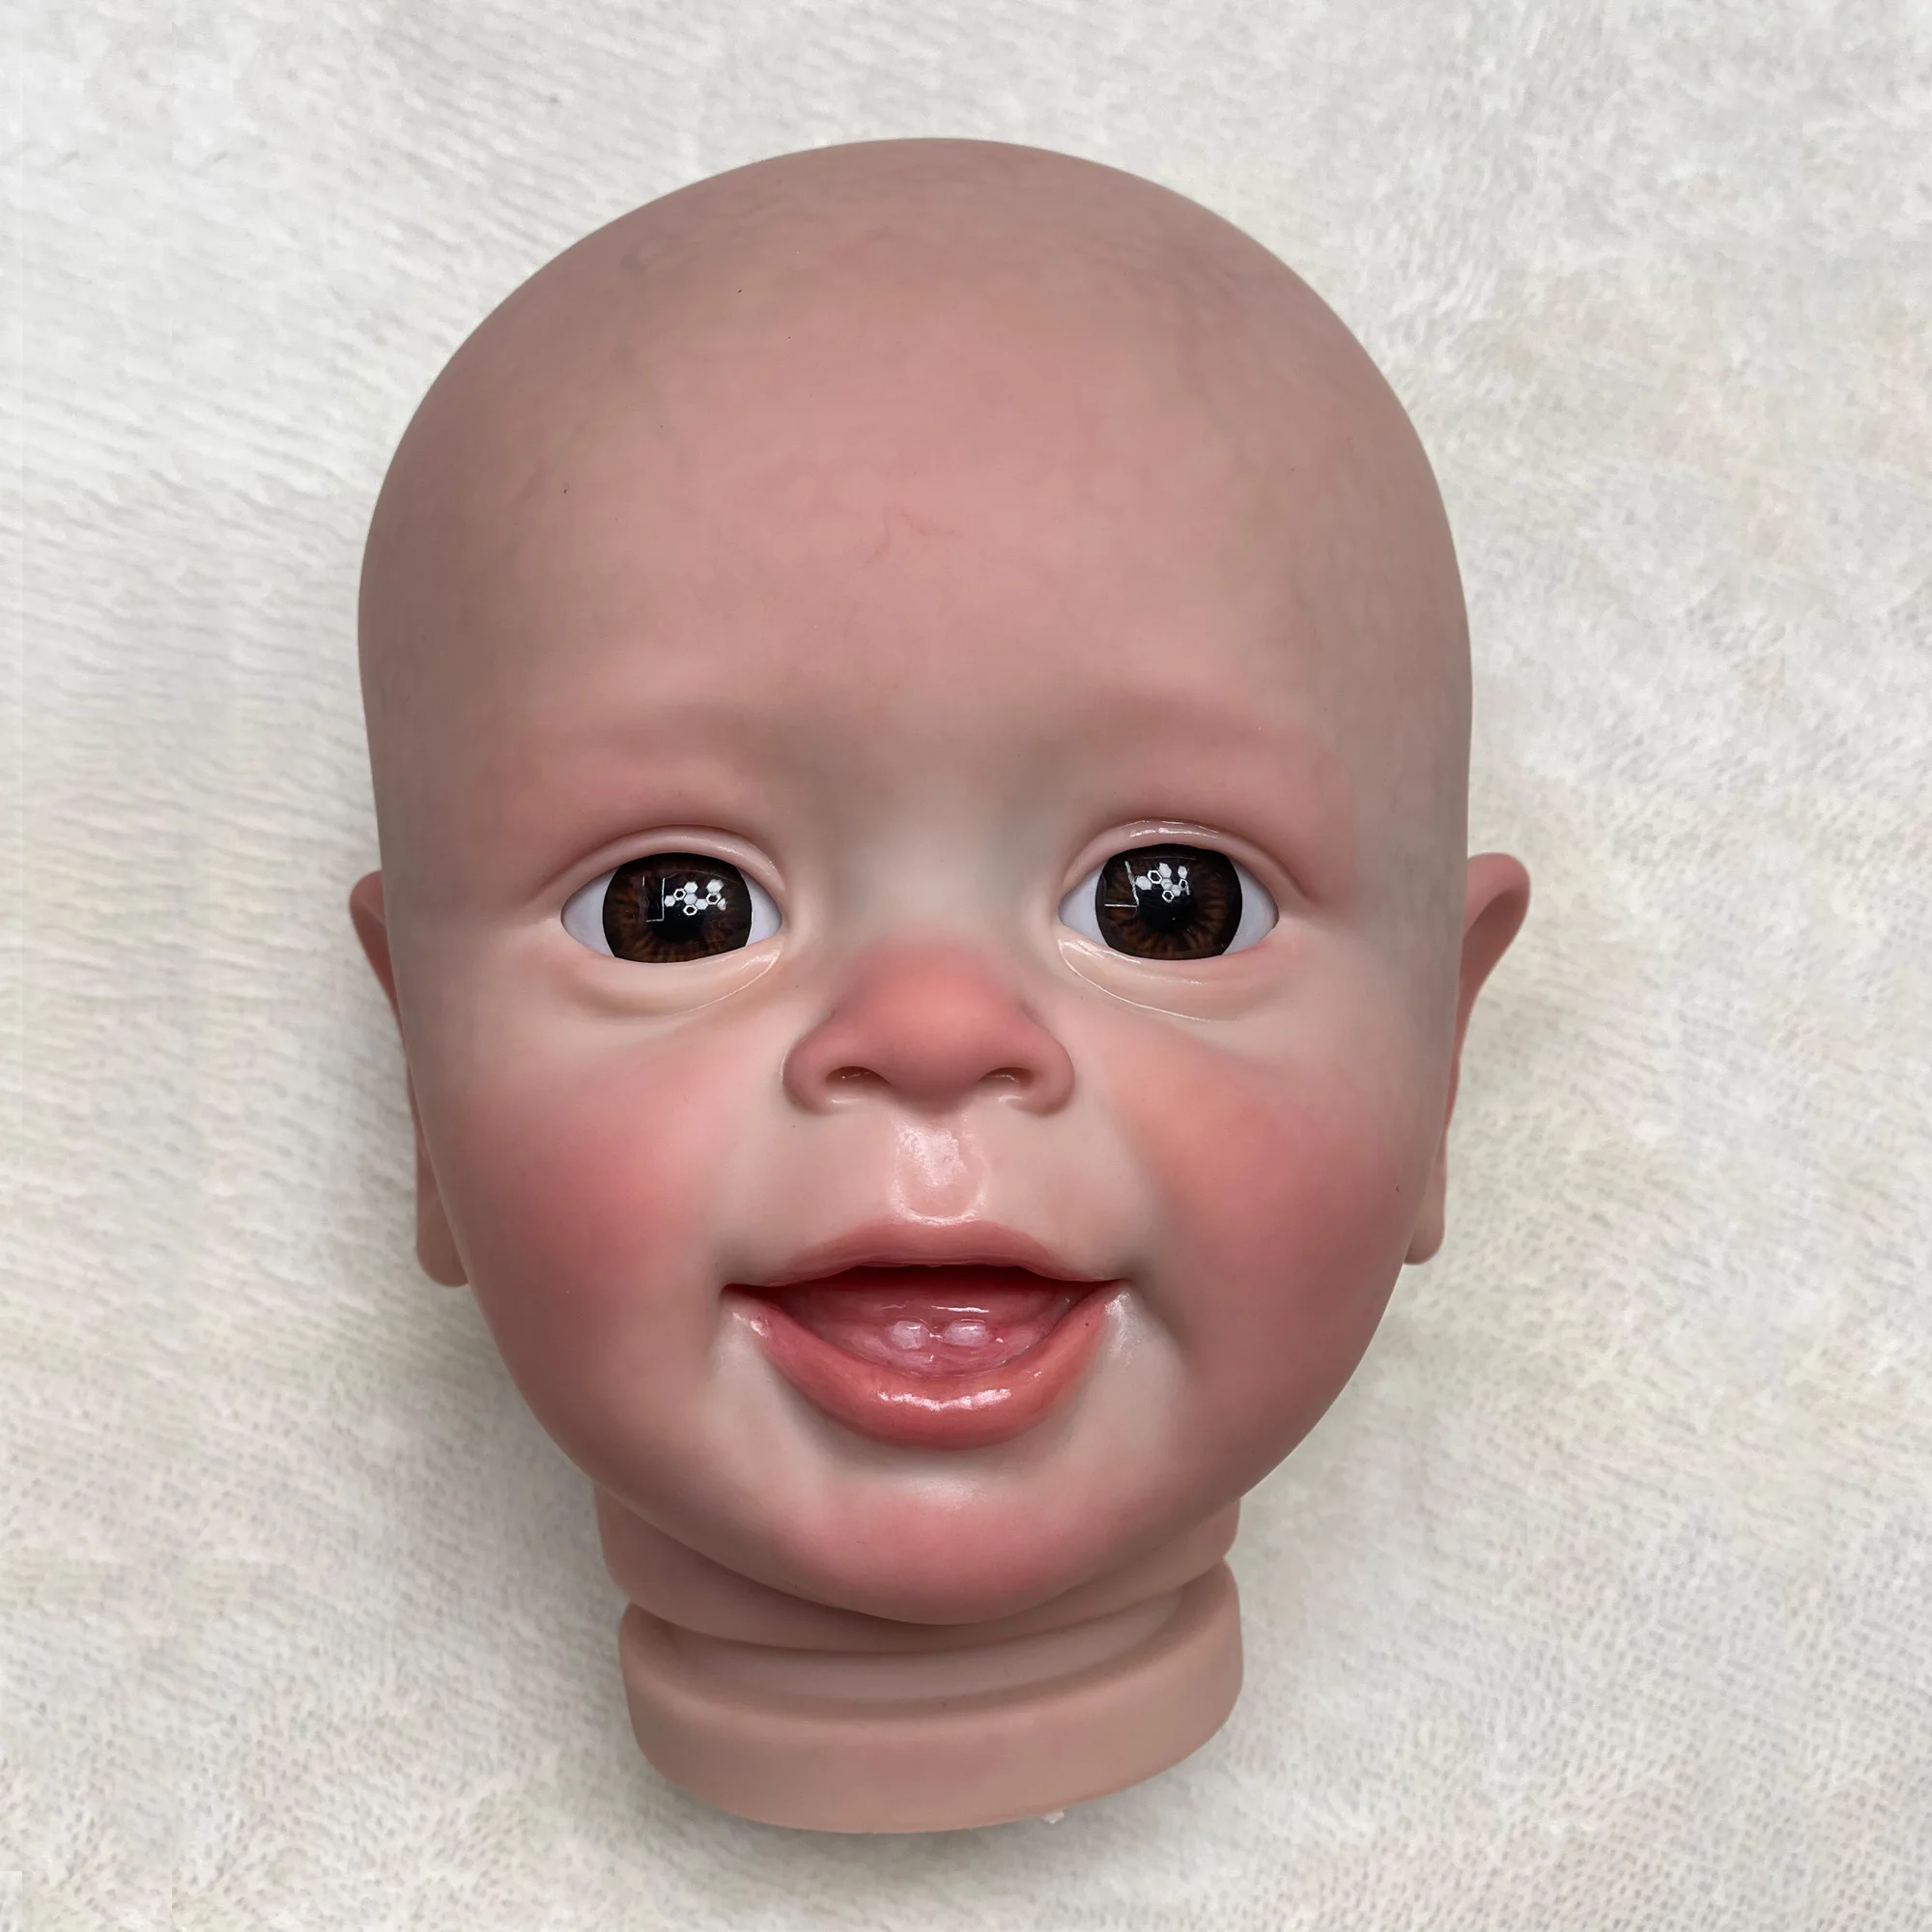 Solid Silicone Reborn Doll, Bebe Doll, pode beber leite, xixi, tomar banho,  macio, 35 cm - AliExpress